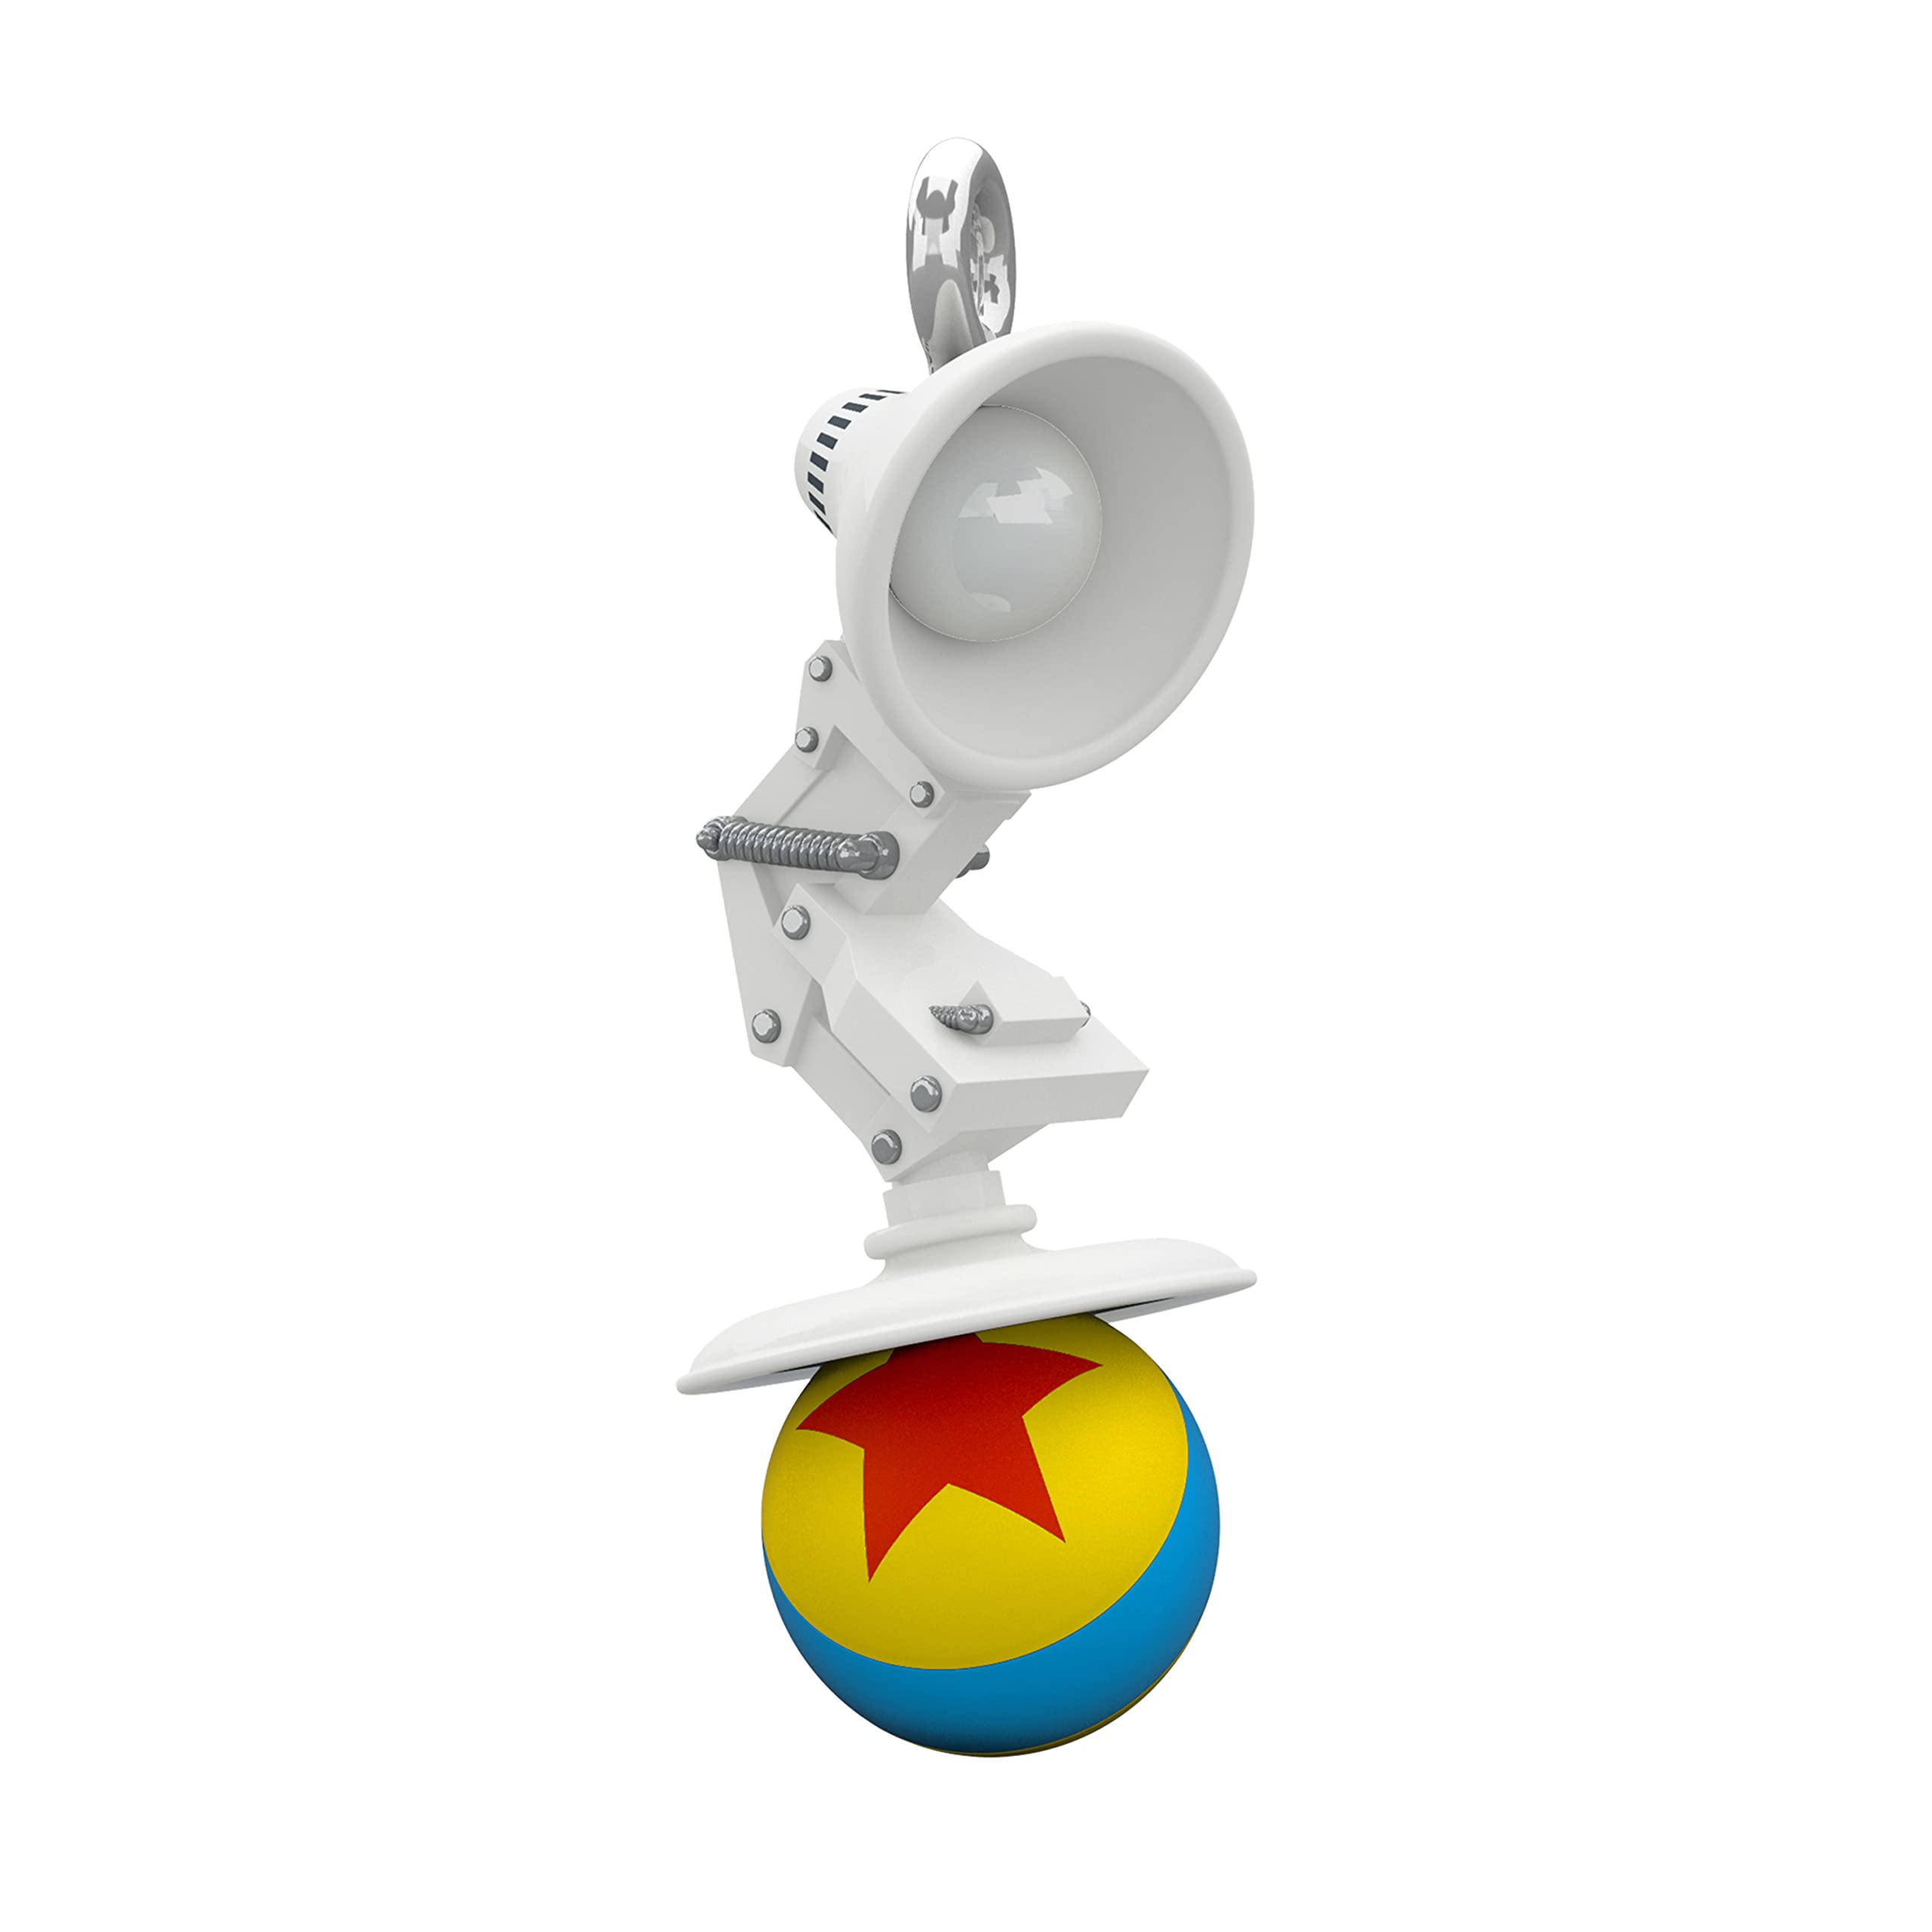 Pixar Pixar Lamp and Ball Hallmark Keepsake